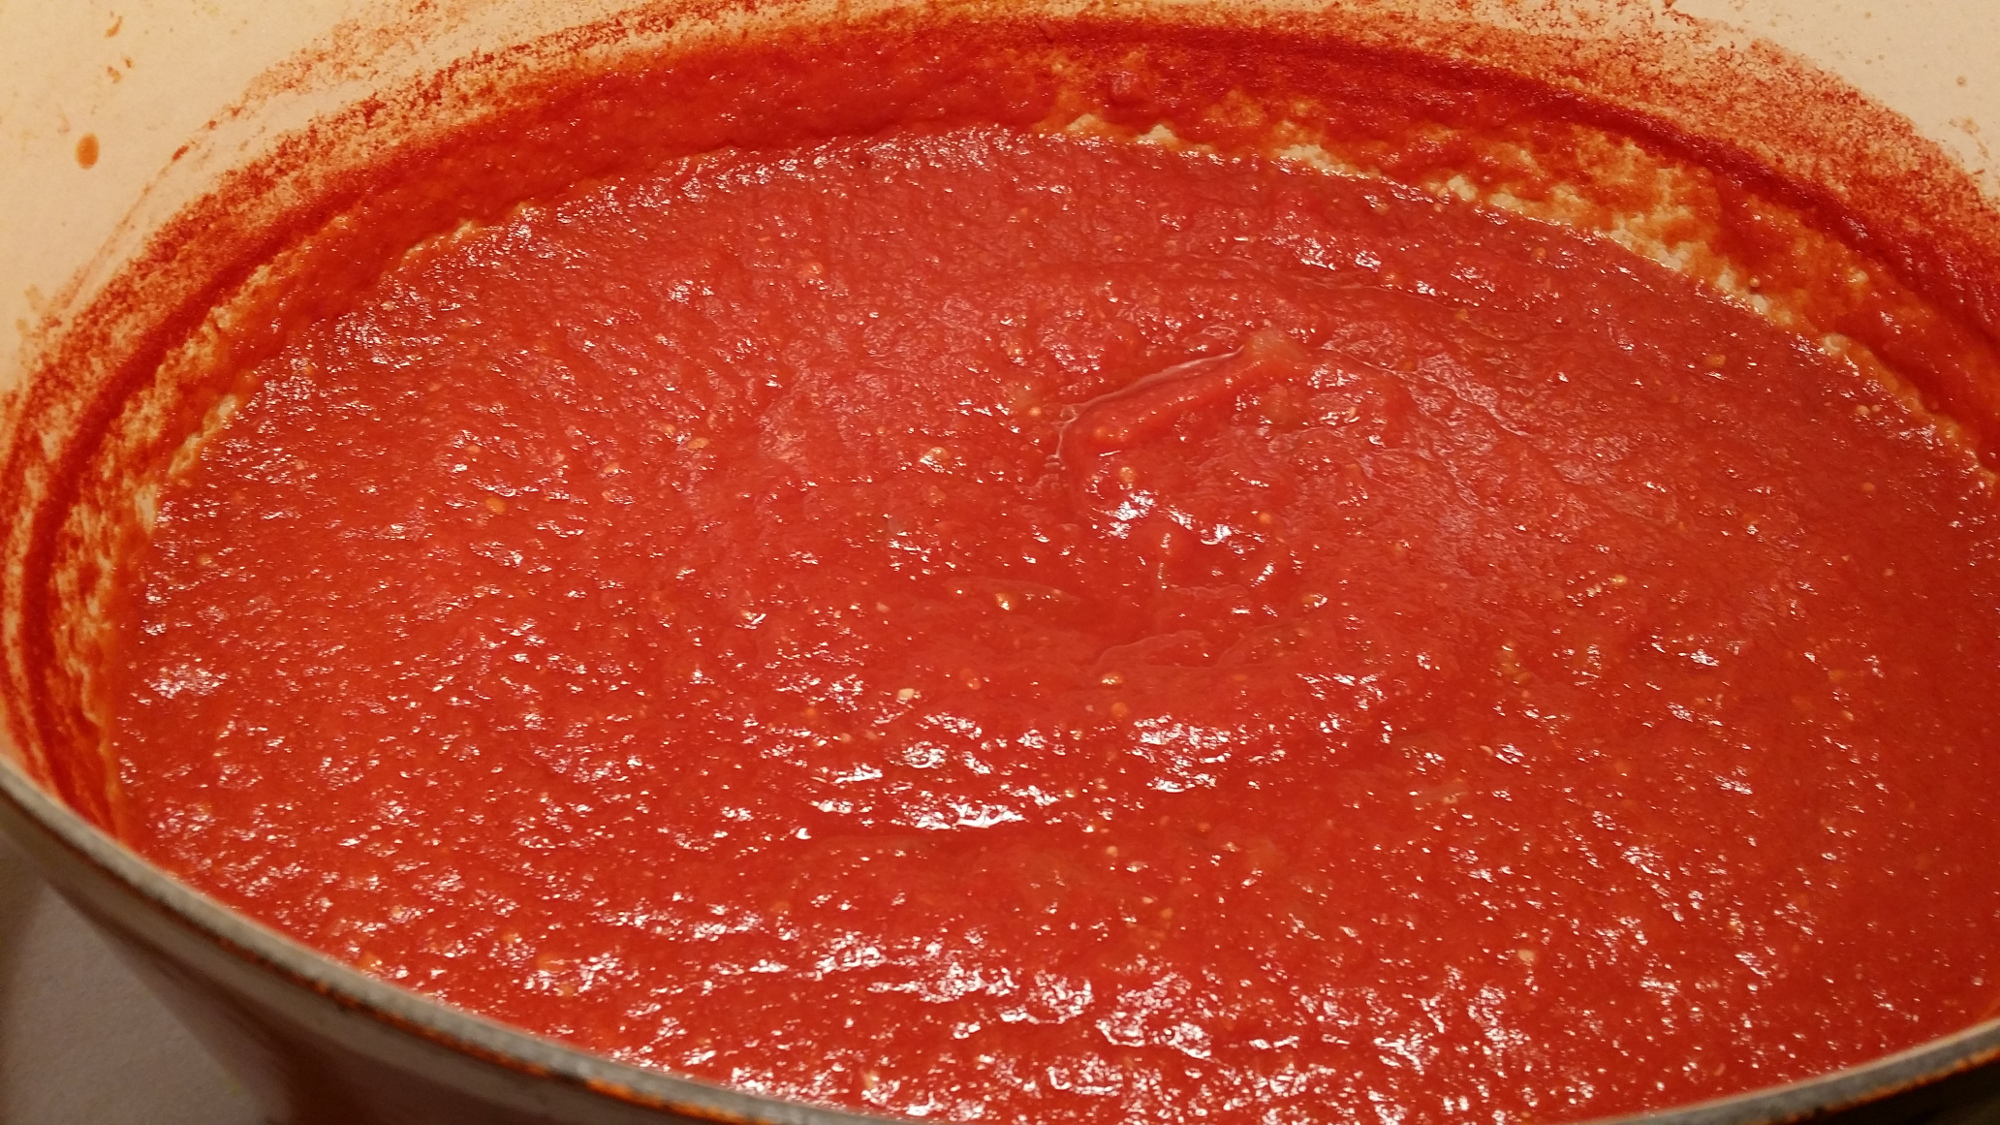 томатный соус из томатов в собственном соку для пиццы фото 106